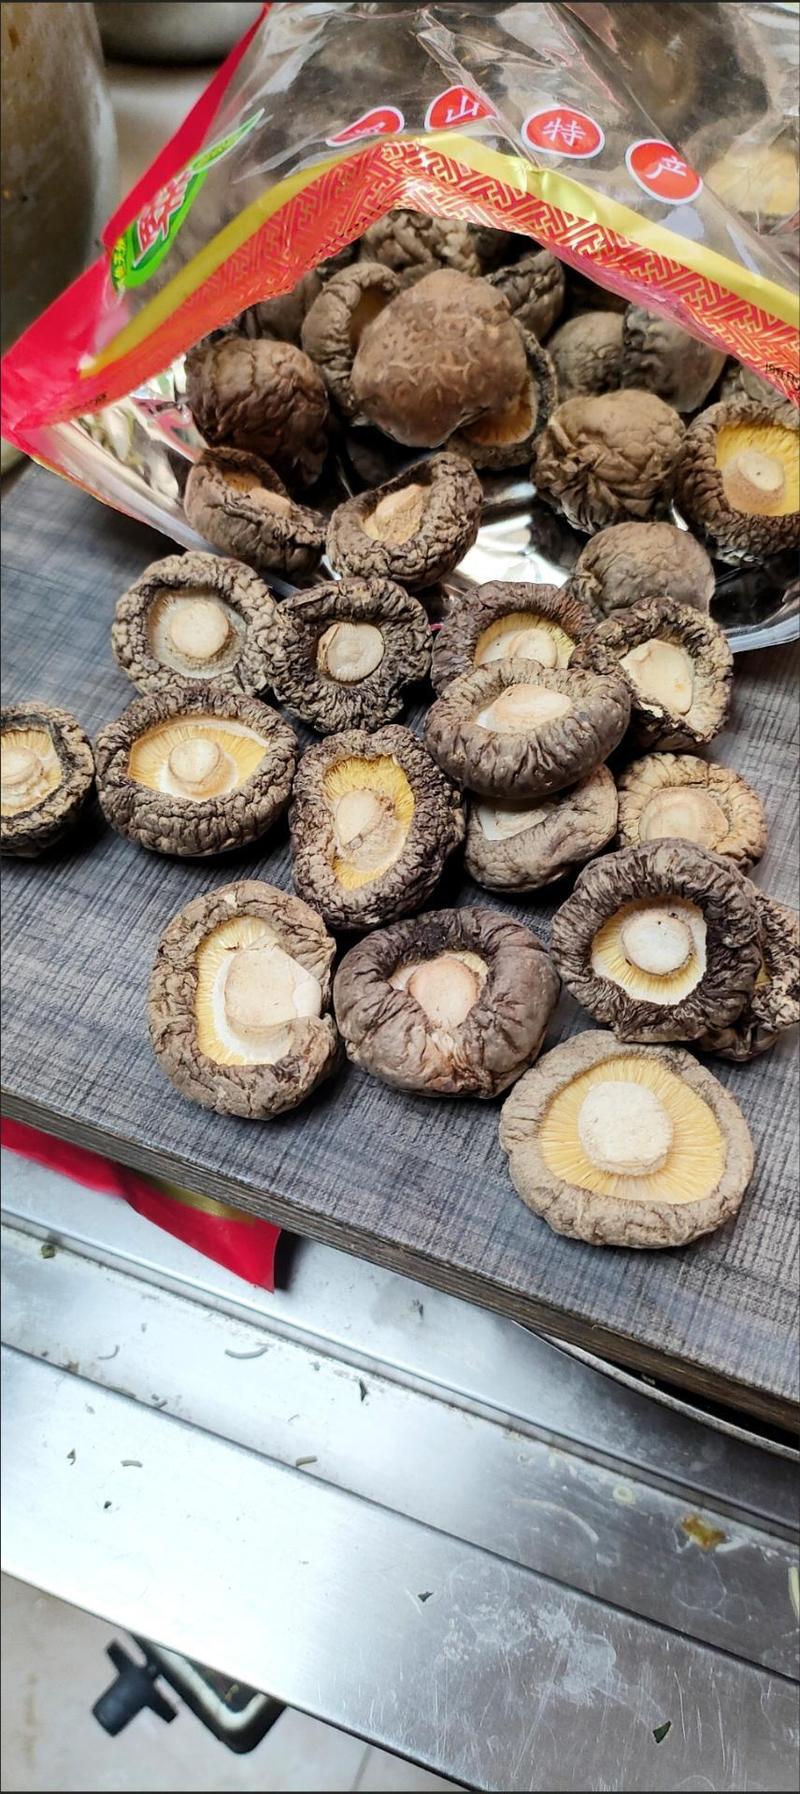 香菇干货特产农家肉厚无根干香菇新货蘑菇菌菇陕西香菇